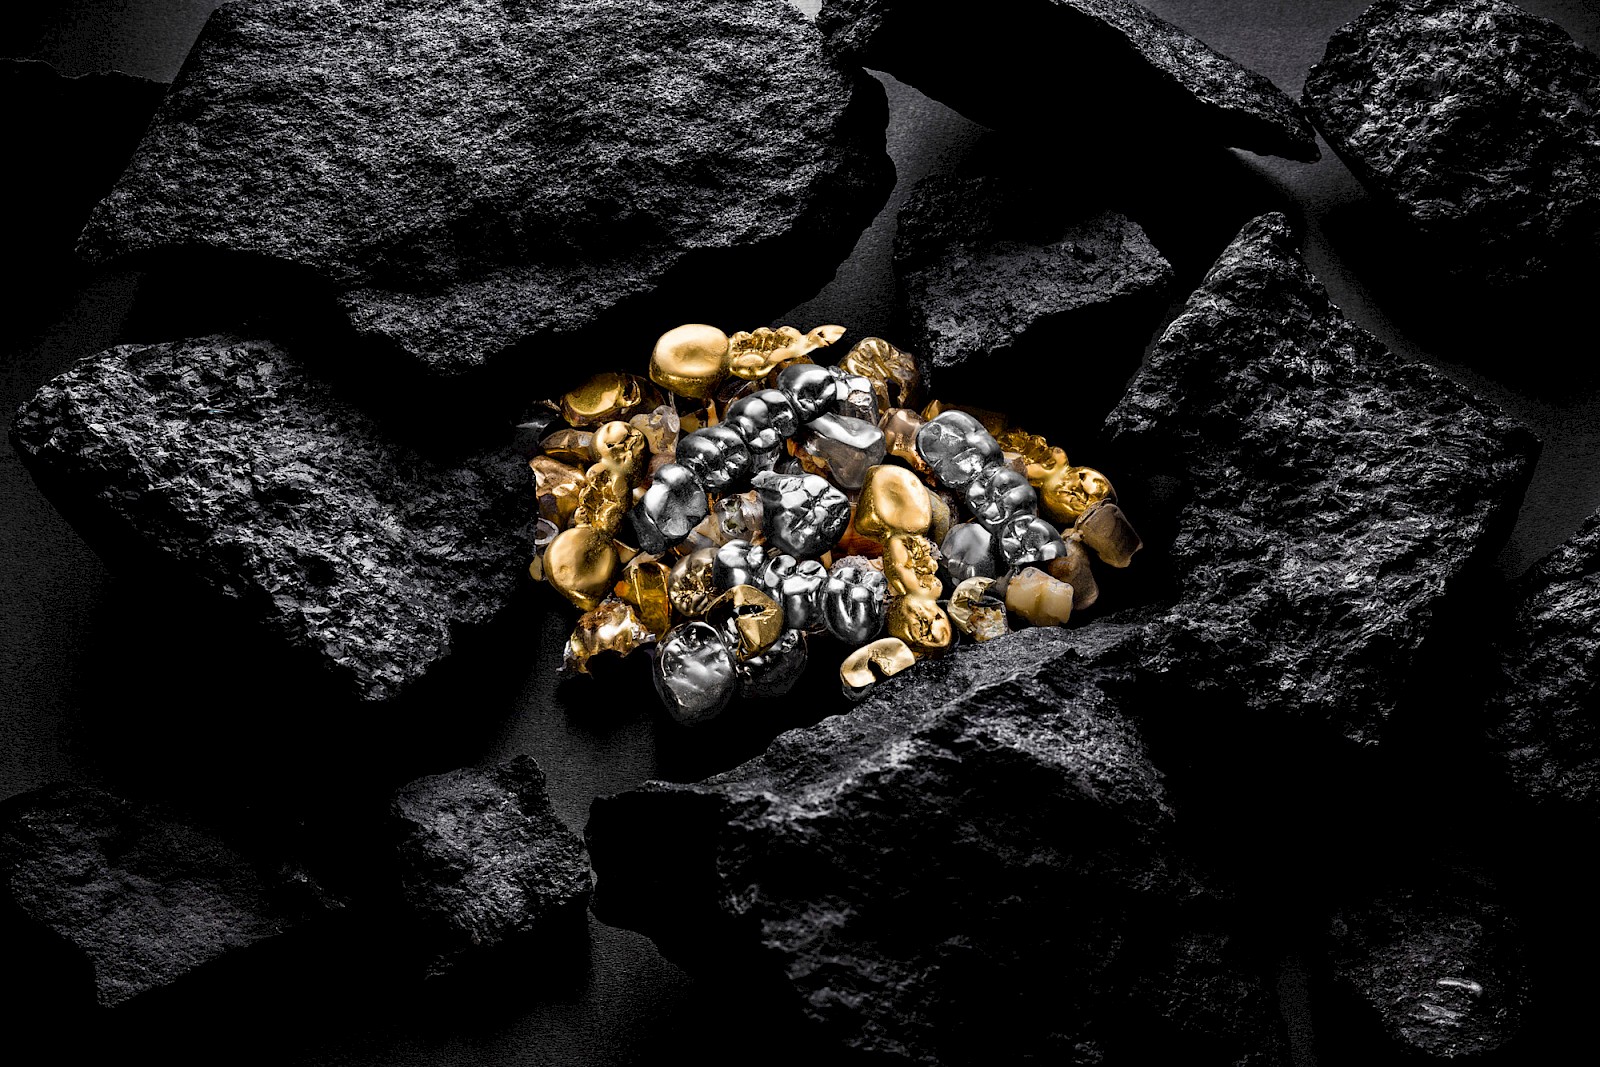 Imagefotografie von Münzen und Goldbarren zum Thema Kohle